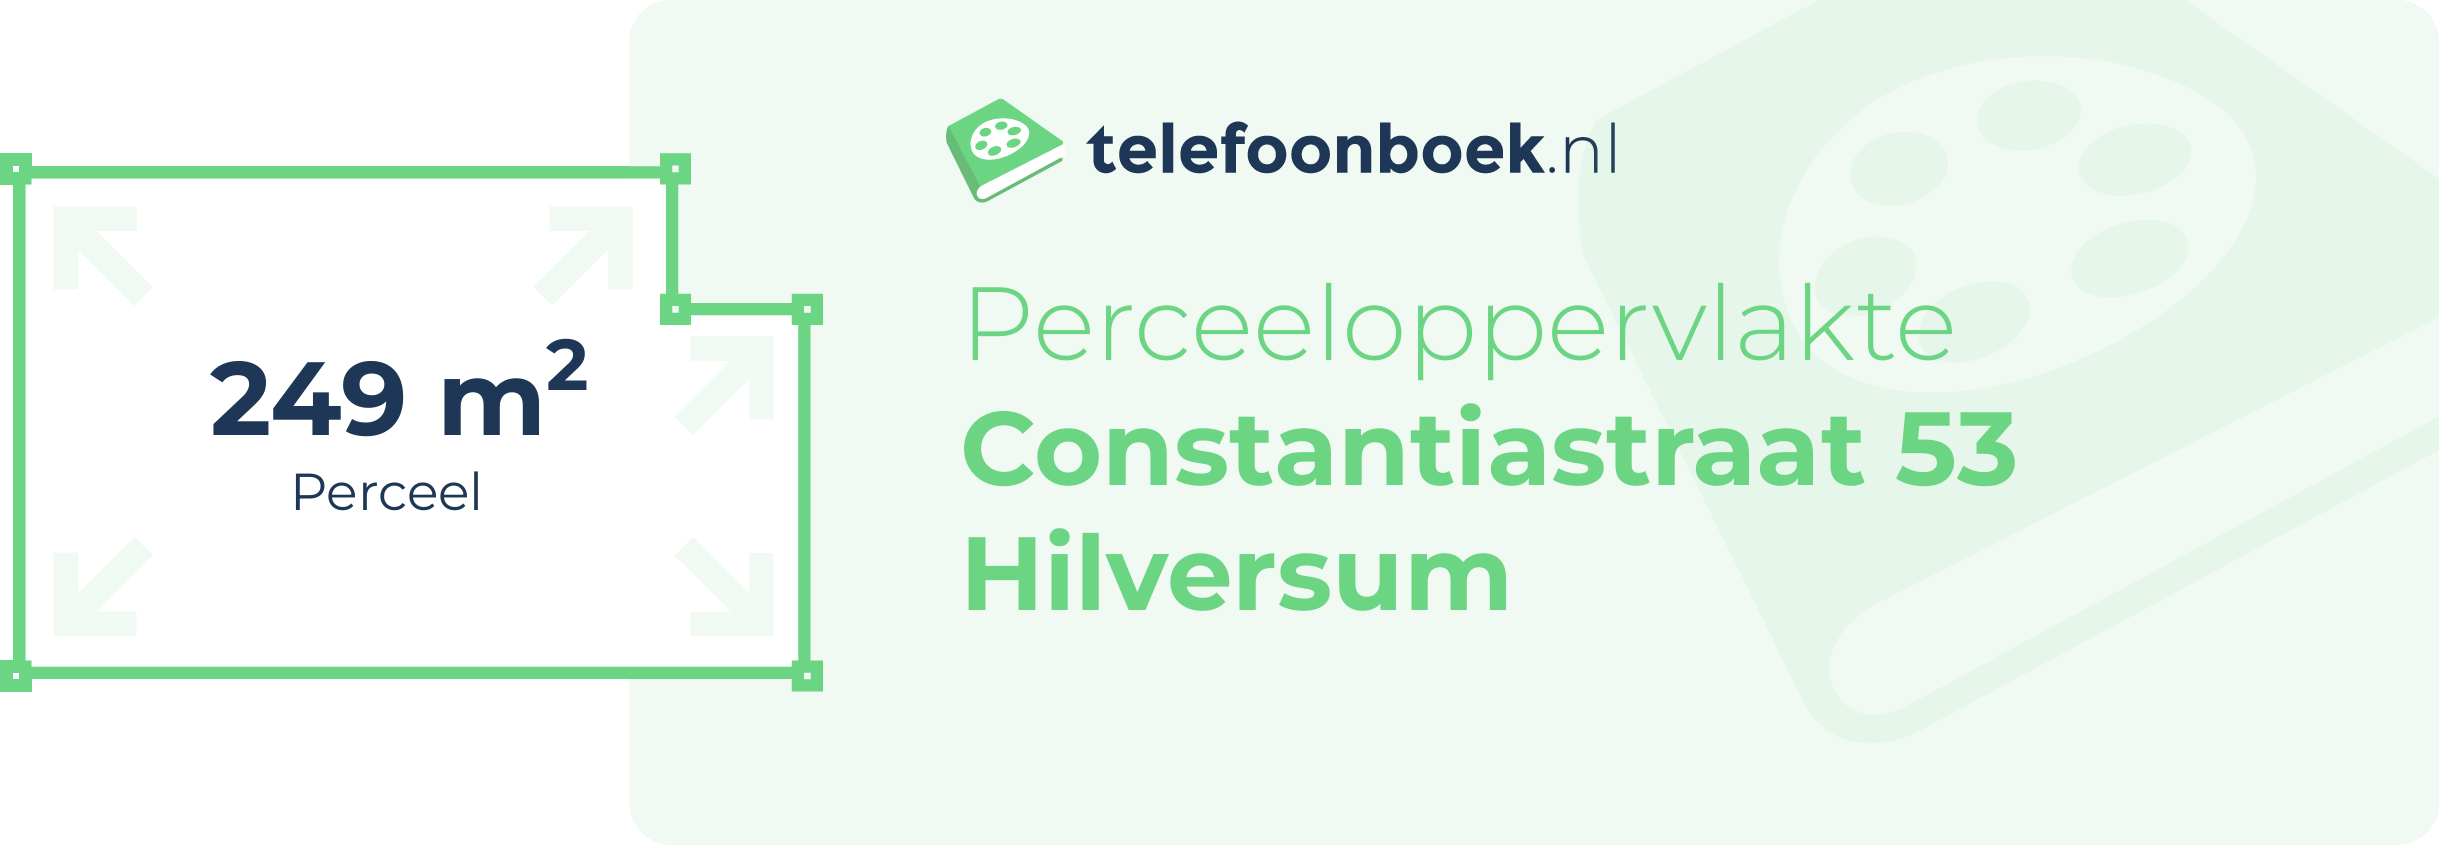 Perceeloppervlakte Constantiastraat 53 Hilversum